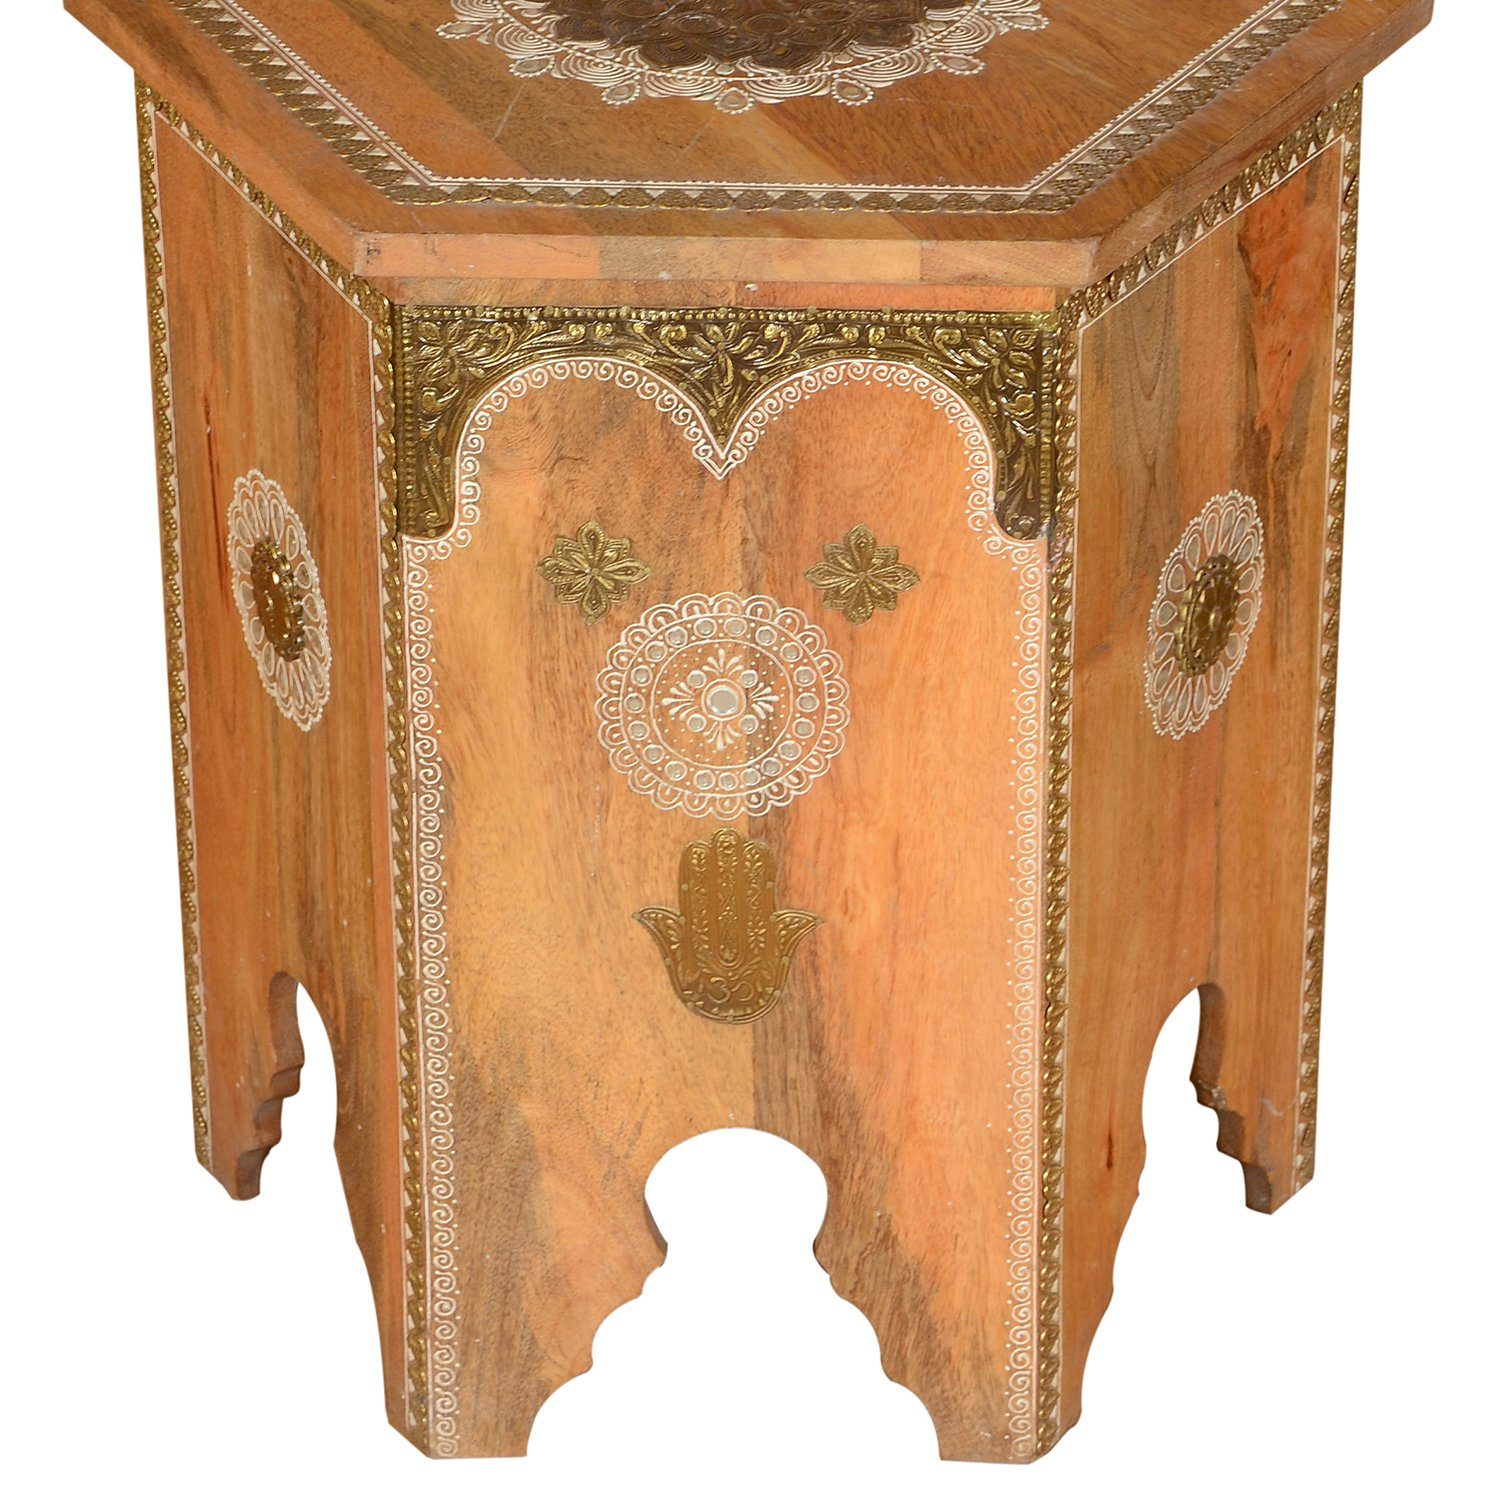 2 aus im Vintage er Massivholz RK38-10 Set), Moro Casa handverziert (Handgefertigt, Beistelltisch Teetische Couchtische Marokkanische Salman Orientalische Beistelltische 2-St., Landhaus-Stil